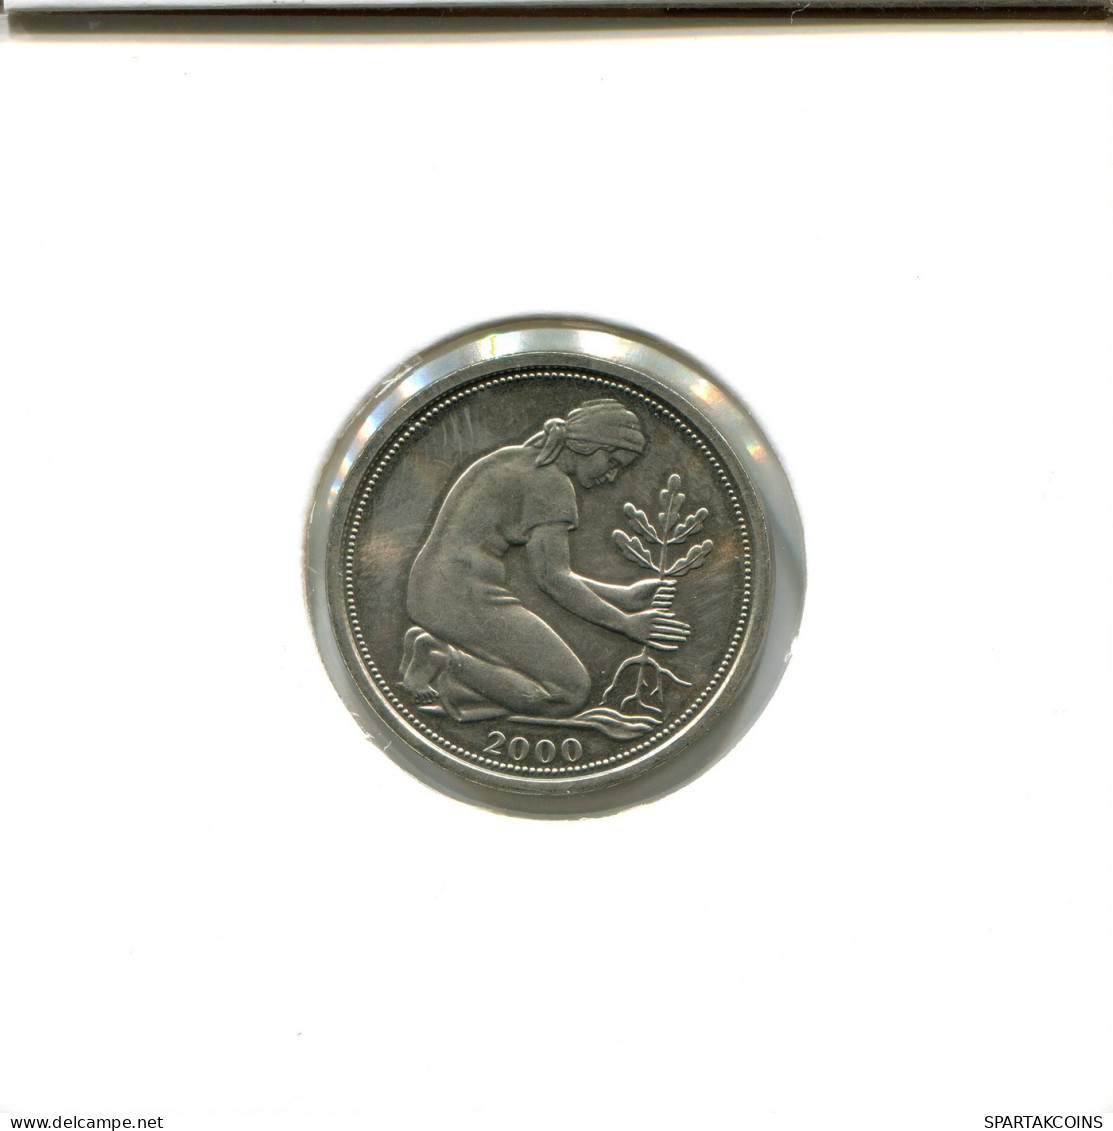 50 PFENNIG 2000 A WEST & UNIFIED GERMANY Coin #DB685.U - 50 Pfennig